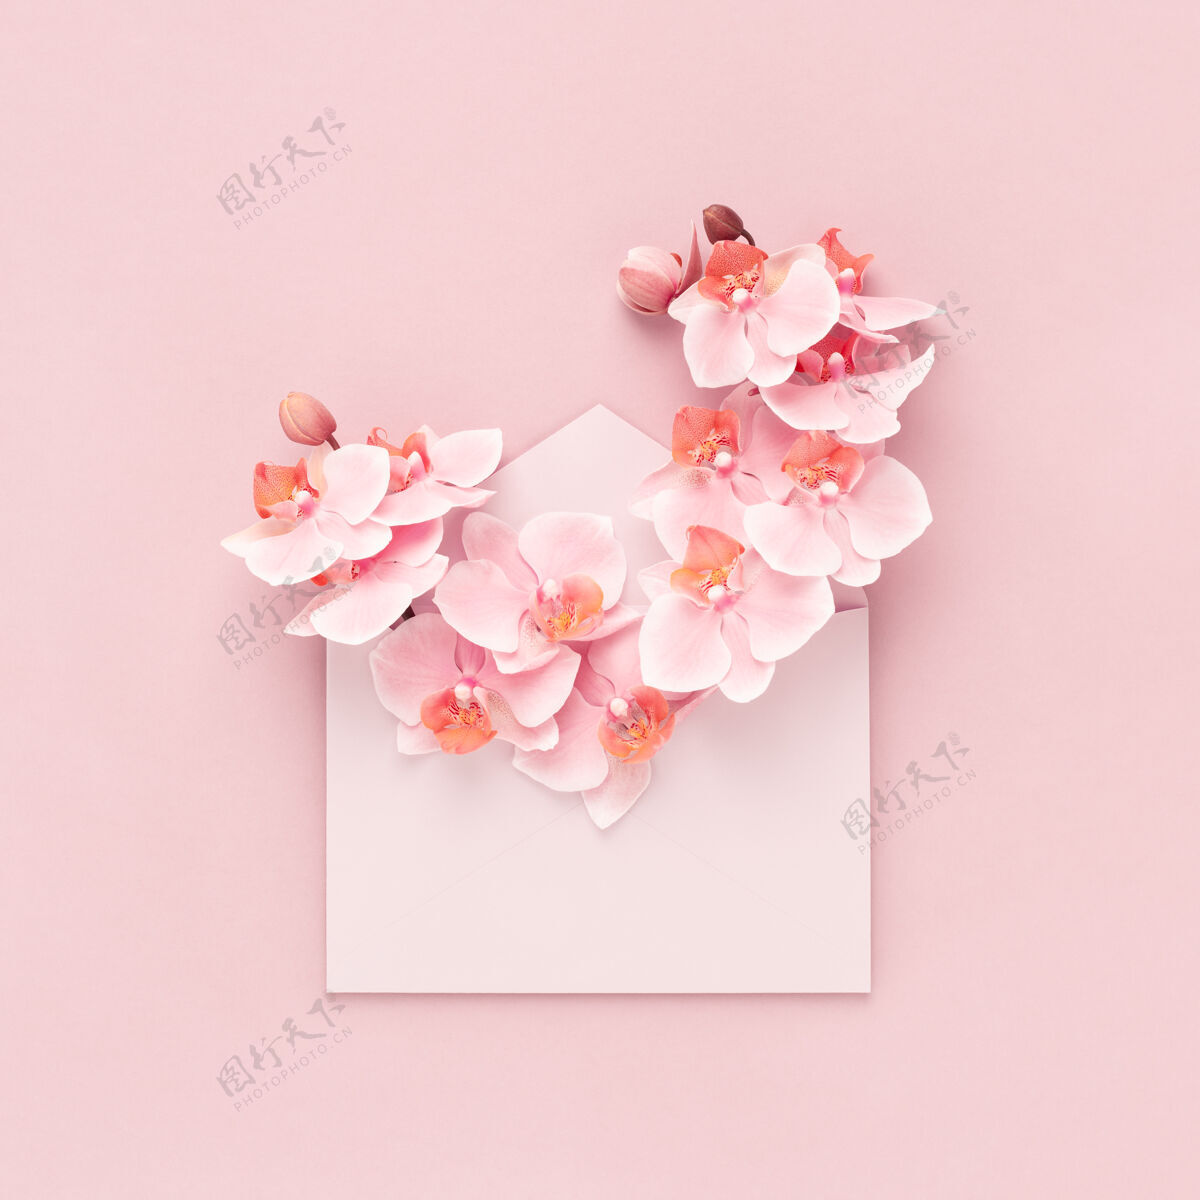 信温柔的兰花花束在粉红色的信封内作为礼物送给妇女节 母亲节 情人节 生日平铺背景兰花生日最小